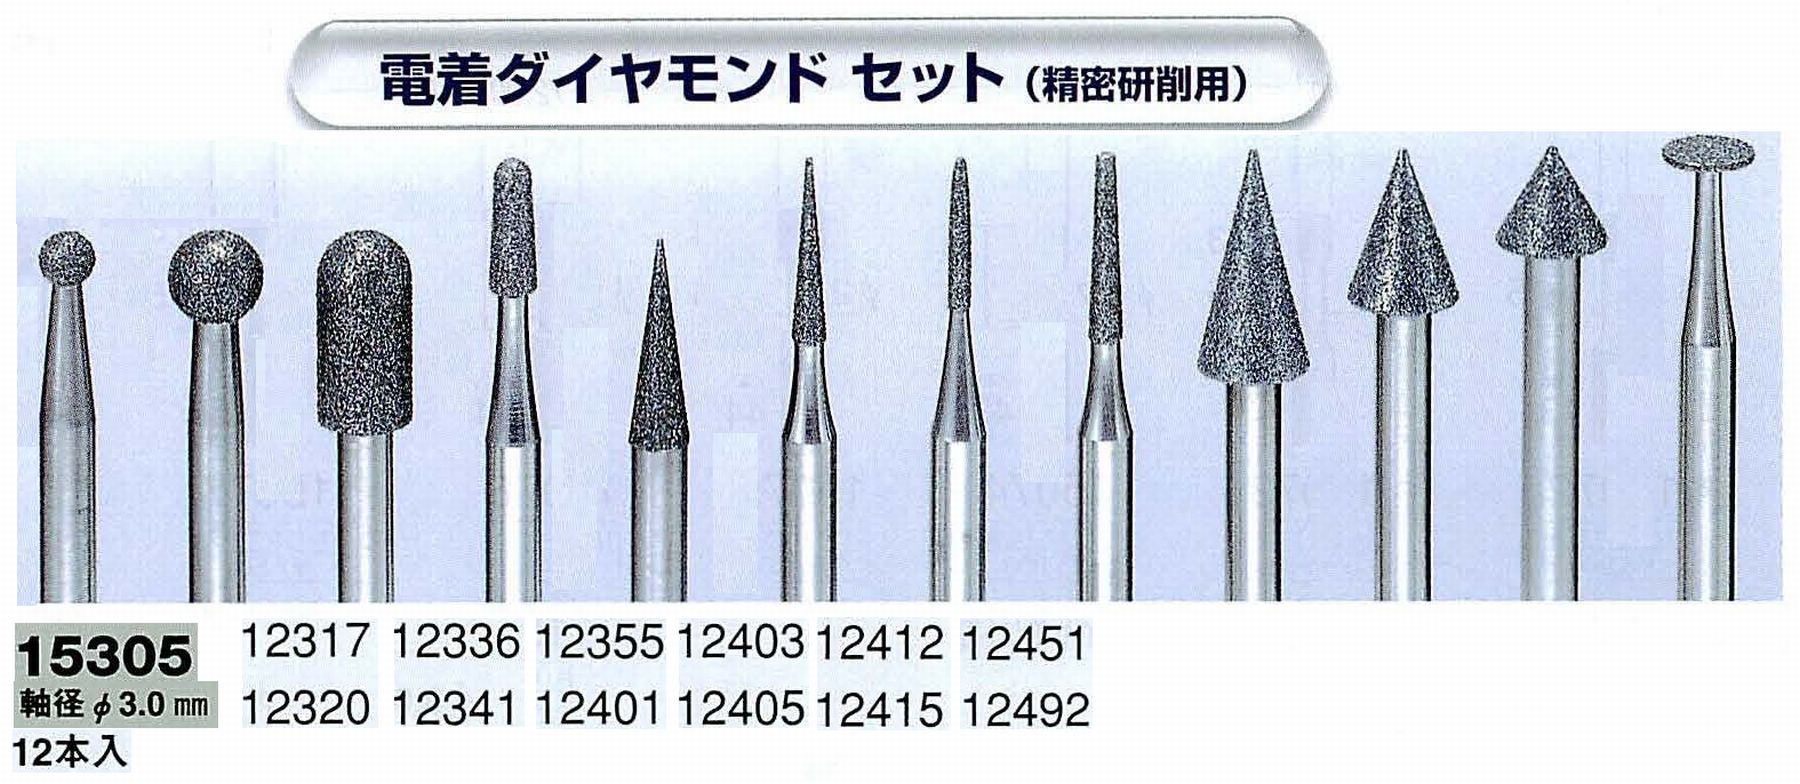 ナカニシ/NAKANISHI 電着ダイヤモンドアソートセット(精密研削用)軸径(シャンク)φ3.0mm 15305